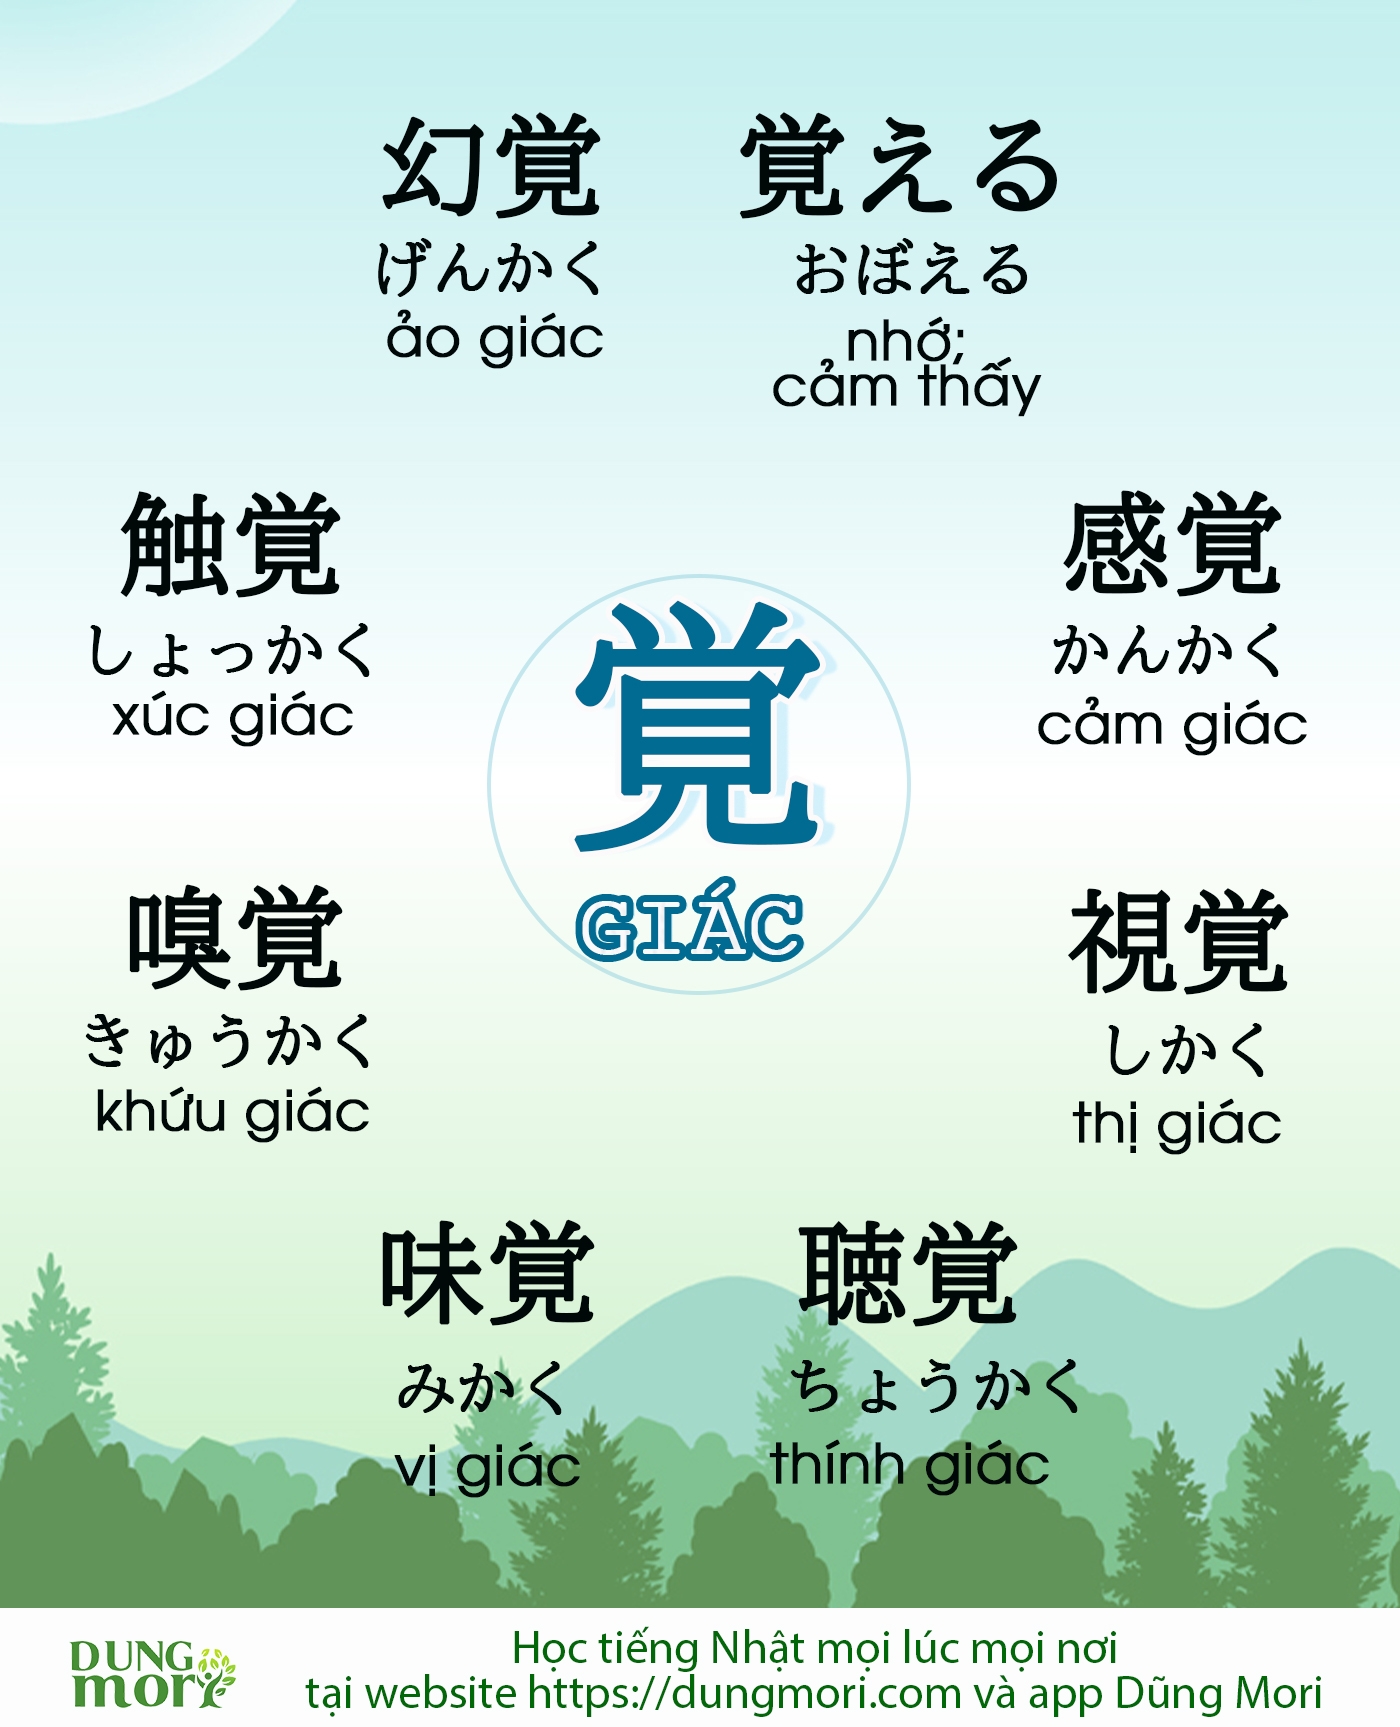 Học từ vựng liên quan đến chữ "Giác"  覚 - Tiếng Nhật online Dũng Mori